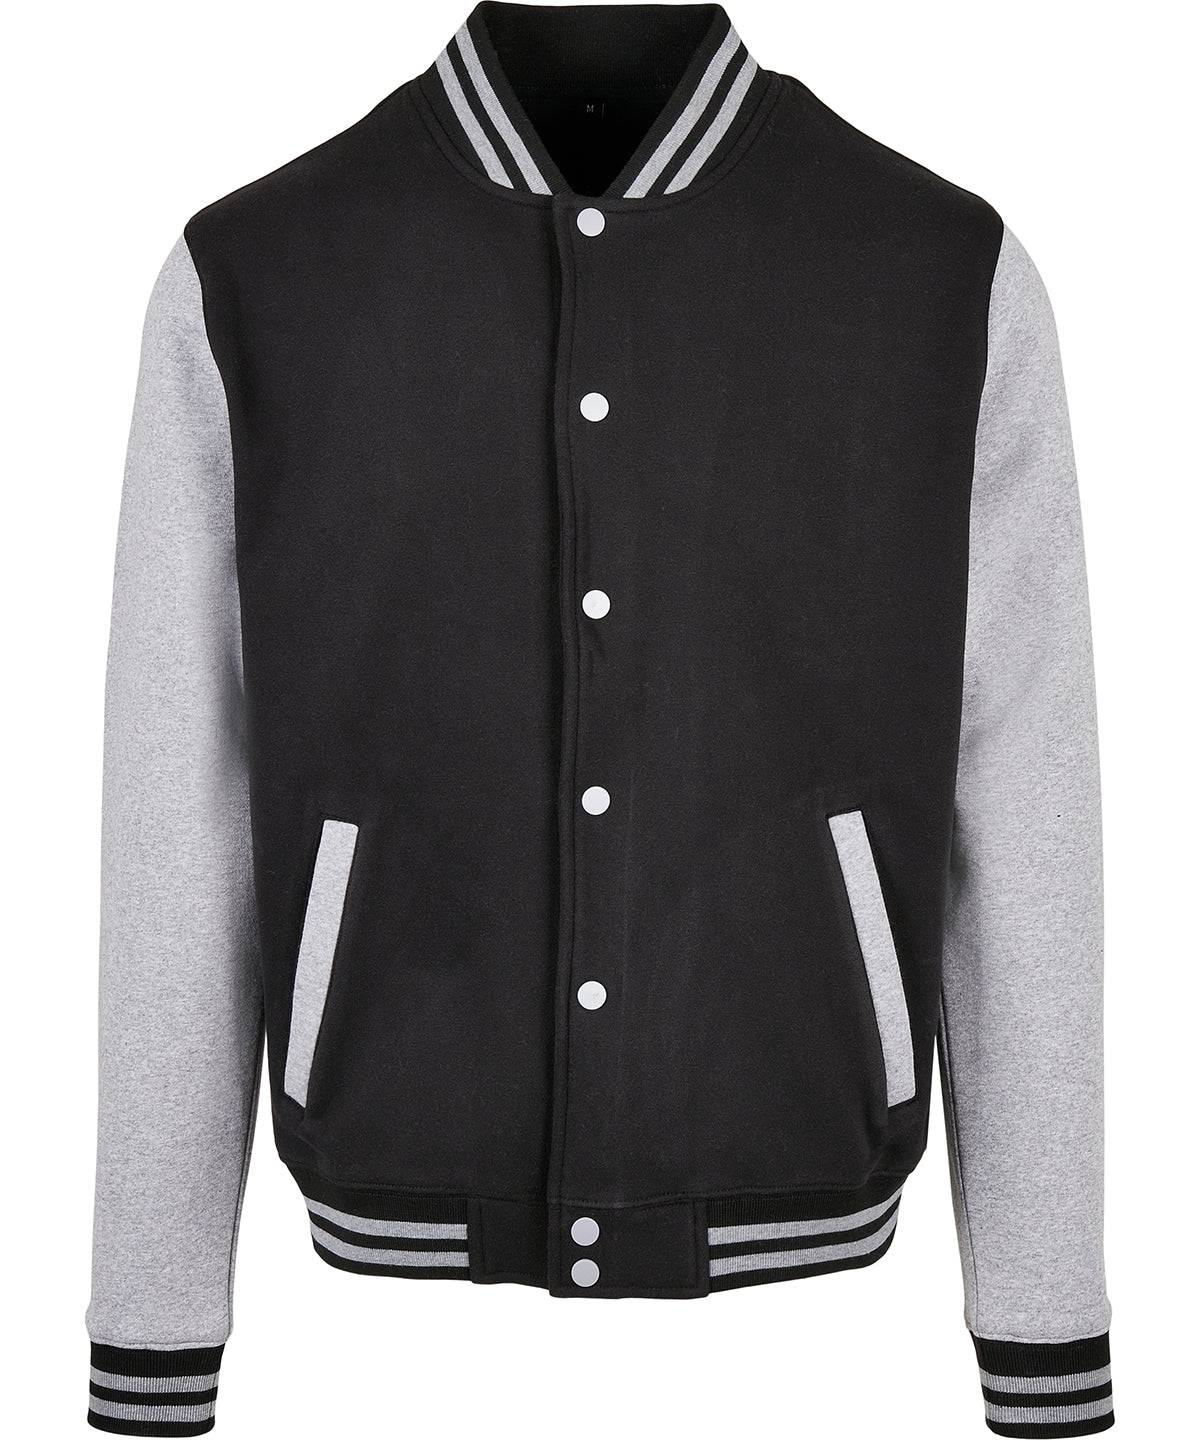 Black/Heather Grey - Basic college jacket